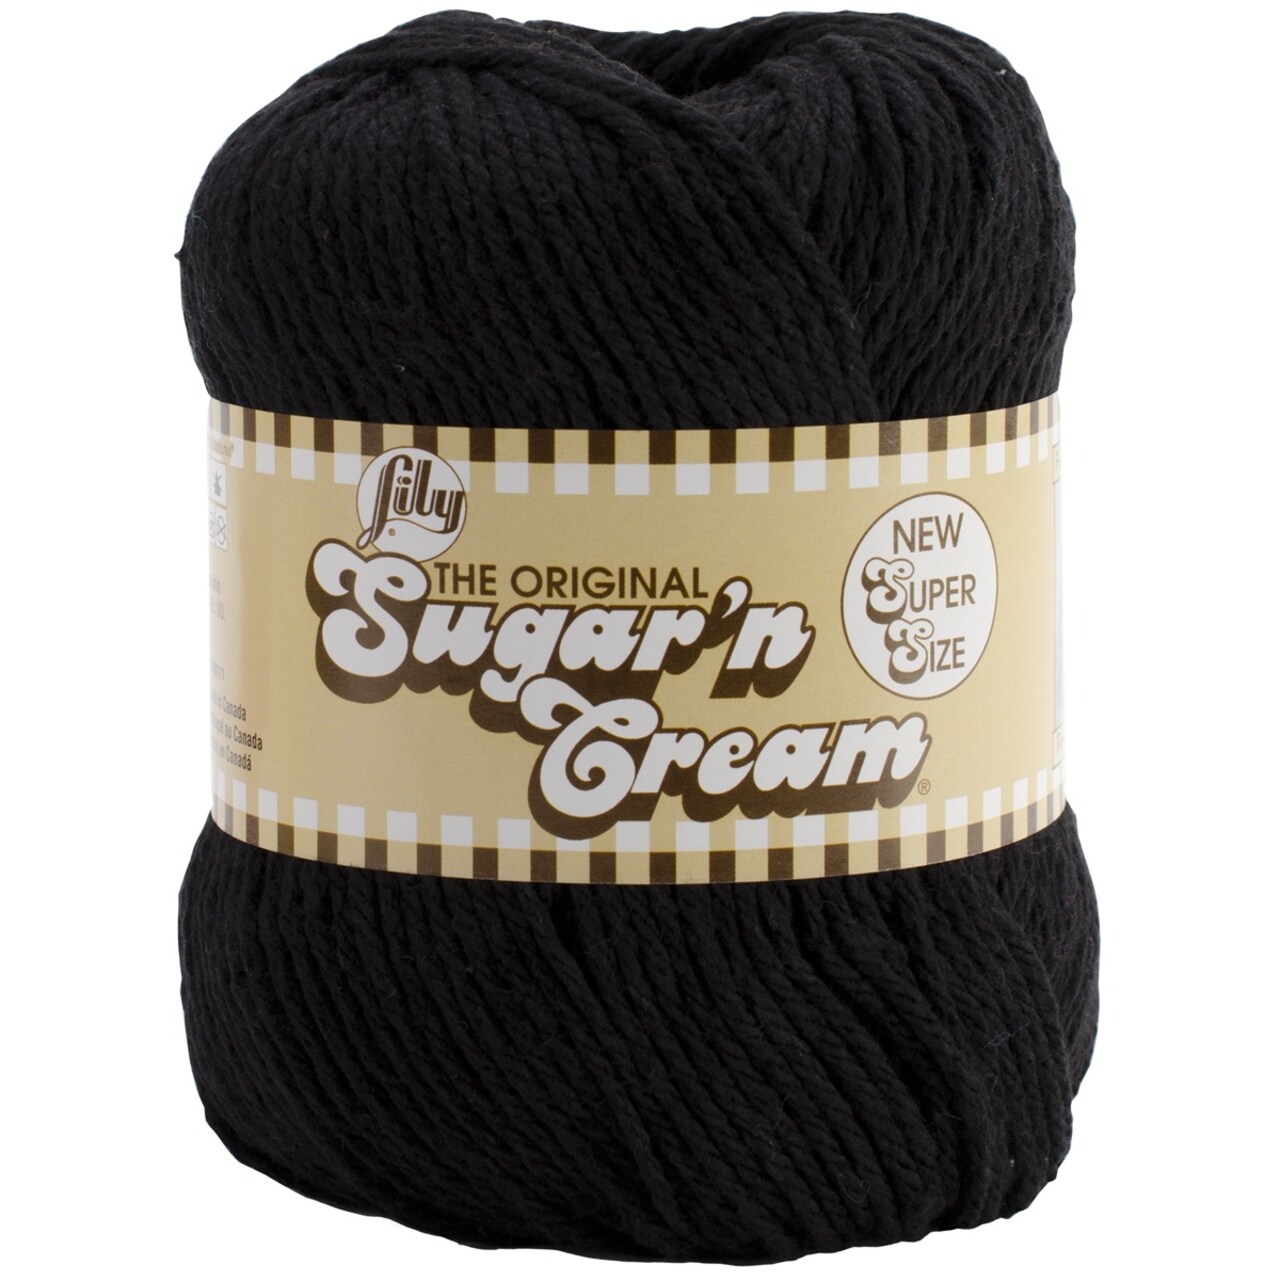 Lily Sugar'N Cream Super Size Black Yarn - 6 Pack of 113g/4oz